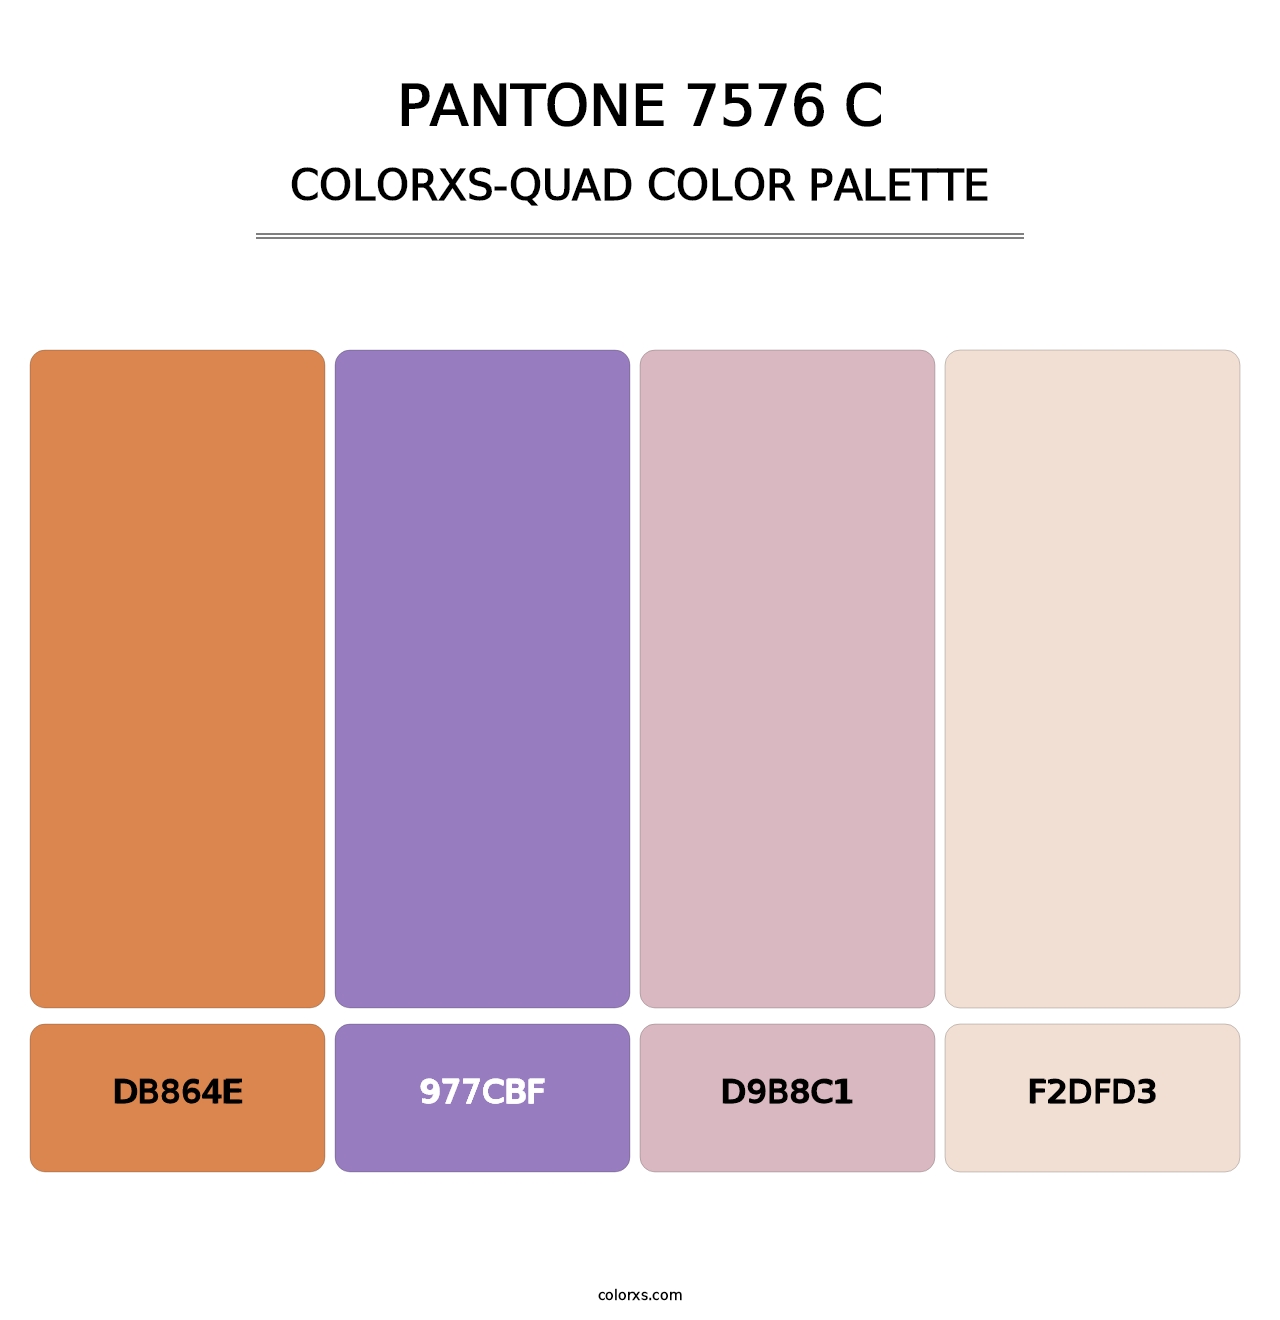 PANTONE 7576 C - Colorxs Quad Palette